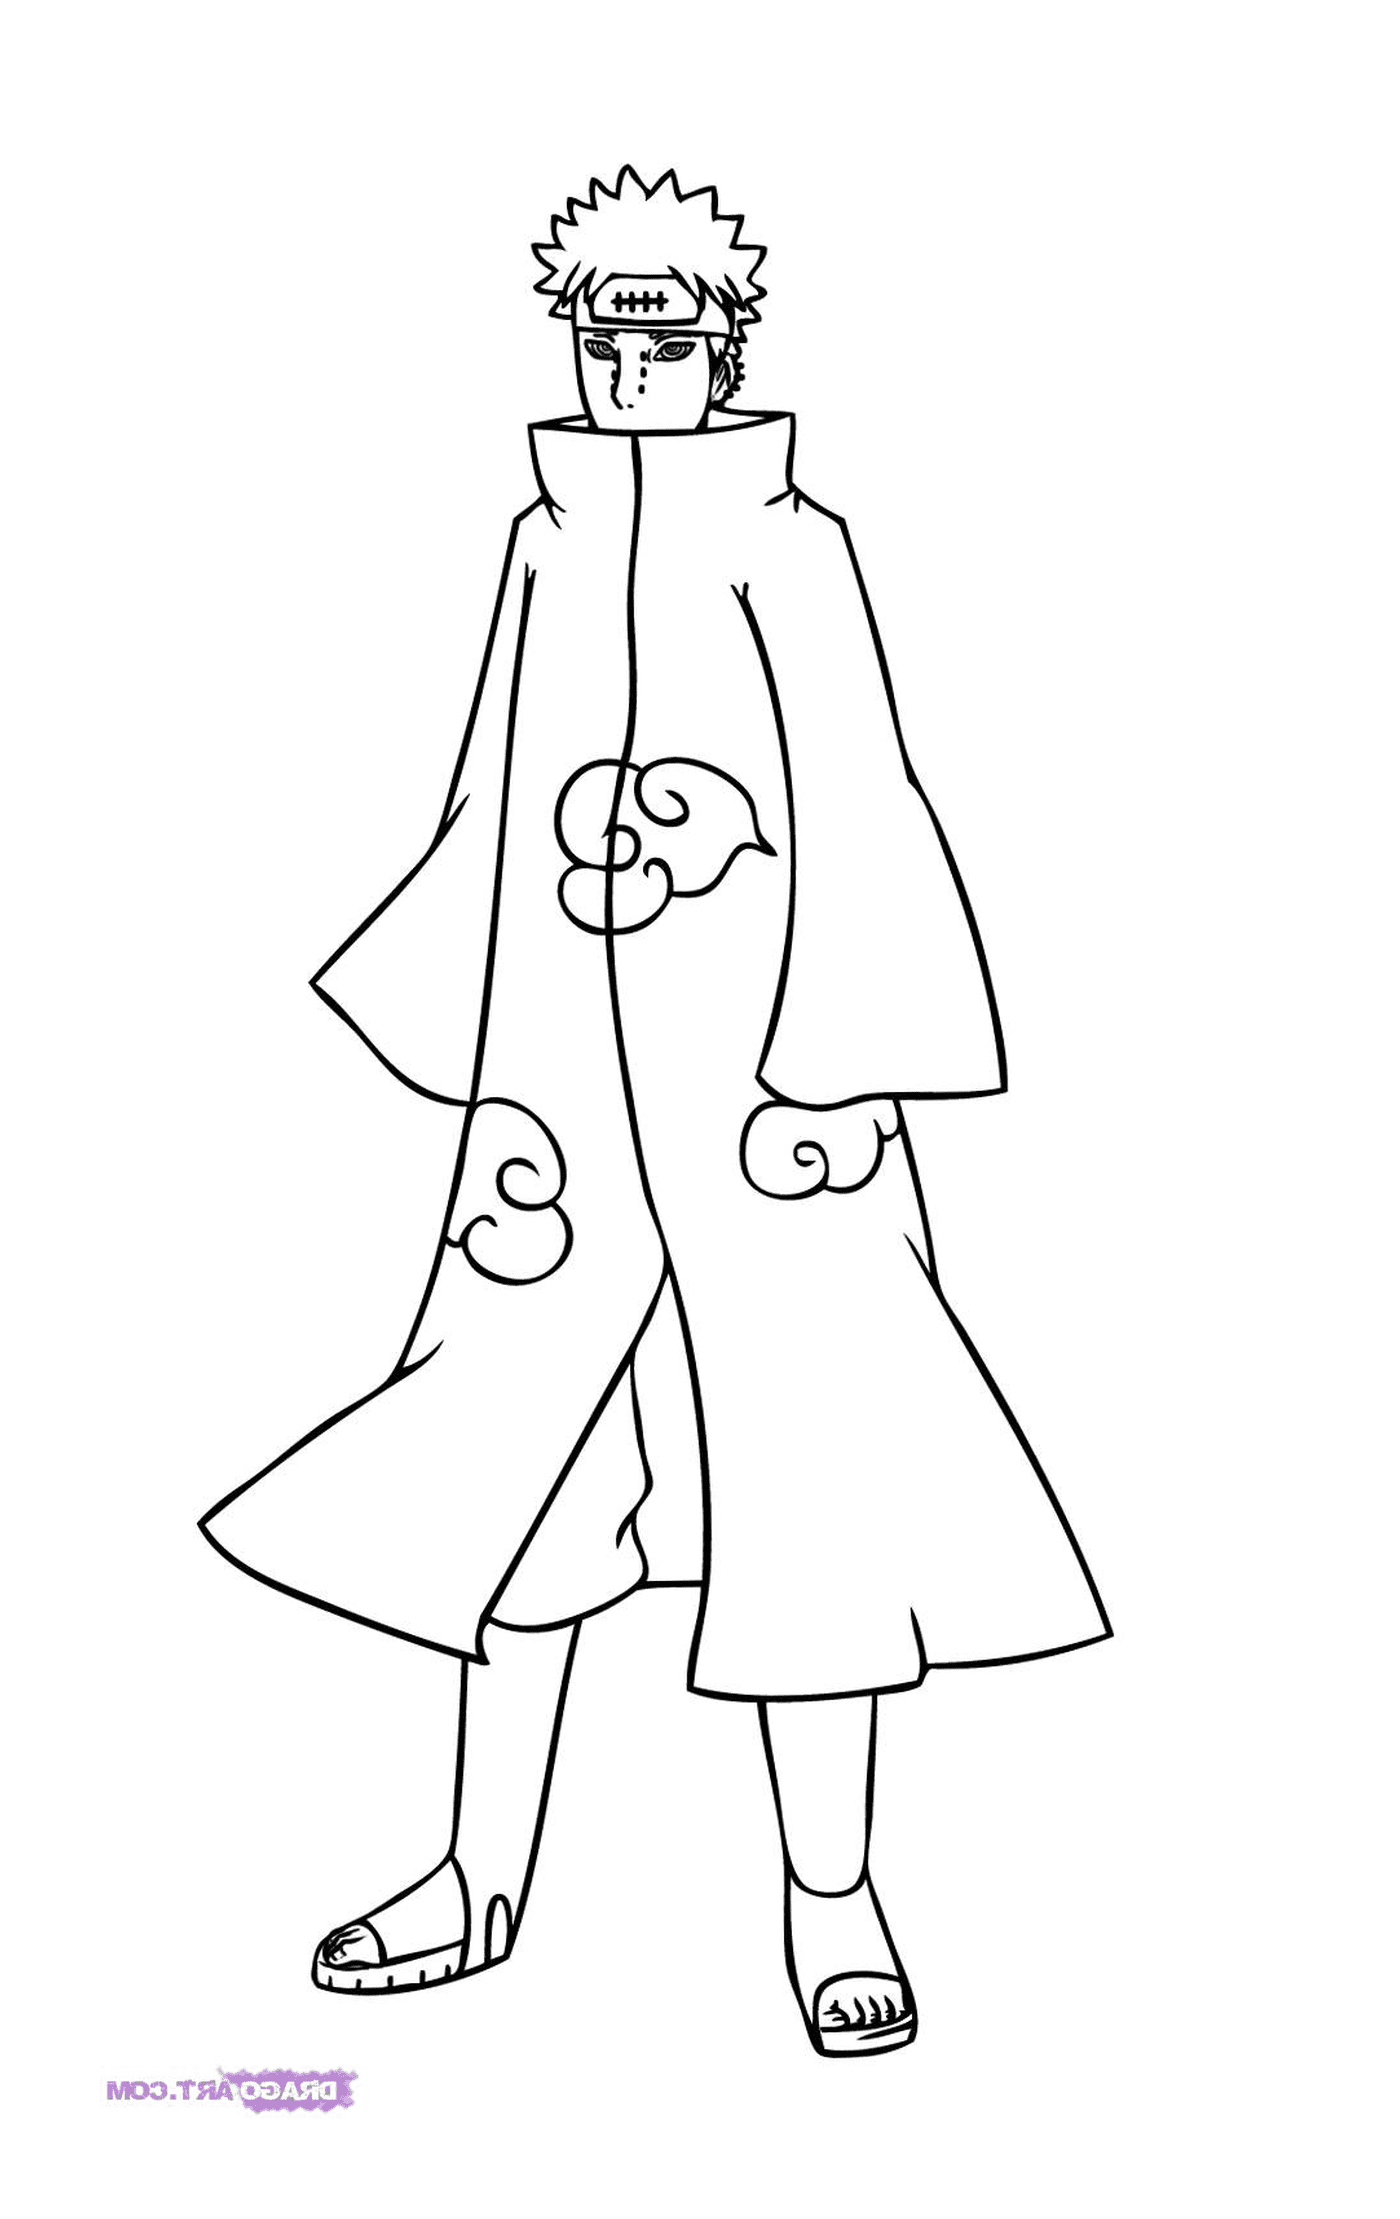  एक लंबा कोट में एक महिला 